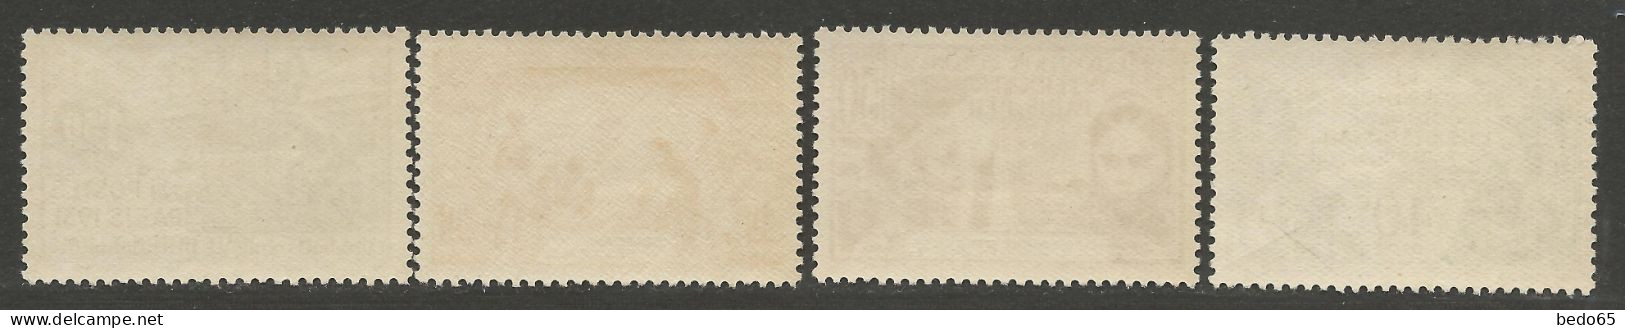 SOUDAN Expo 1931 N° 89 à 92 Série Complète  NEUF* LEGERE TRACE DE CHARNIERE  / Hinge  / MH - Neufs